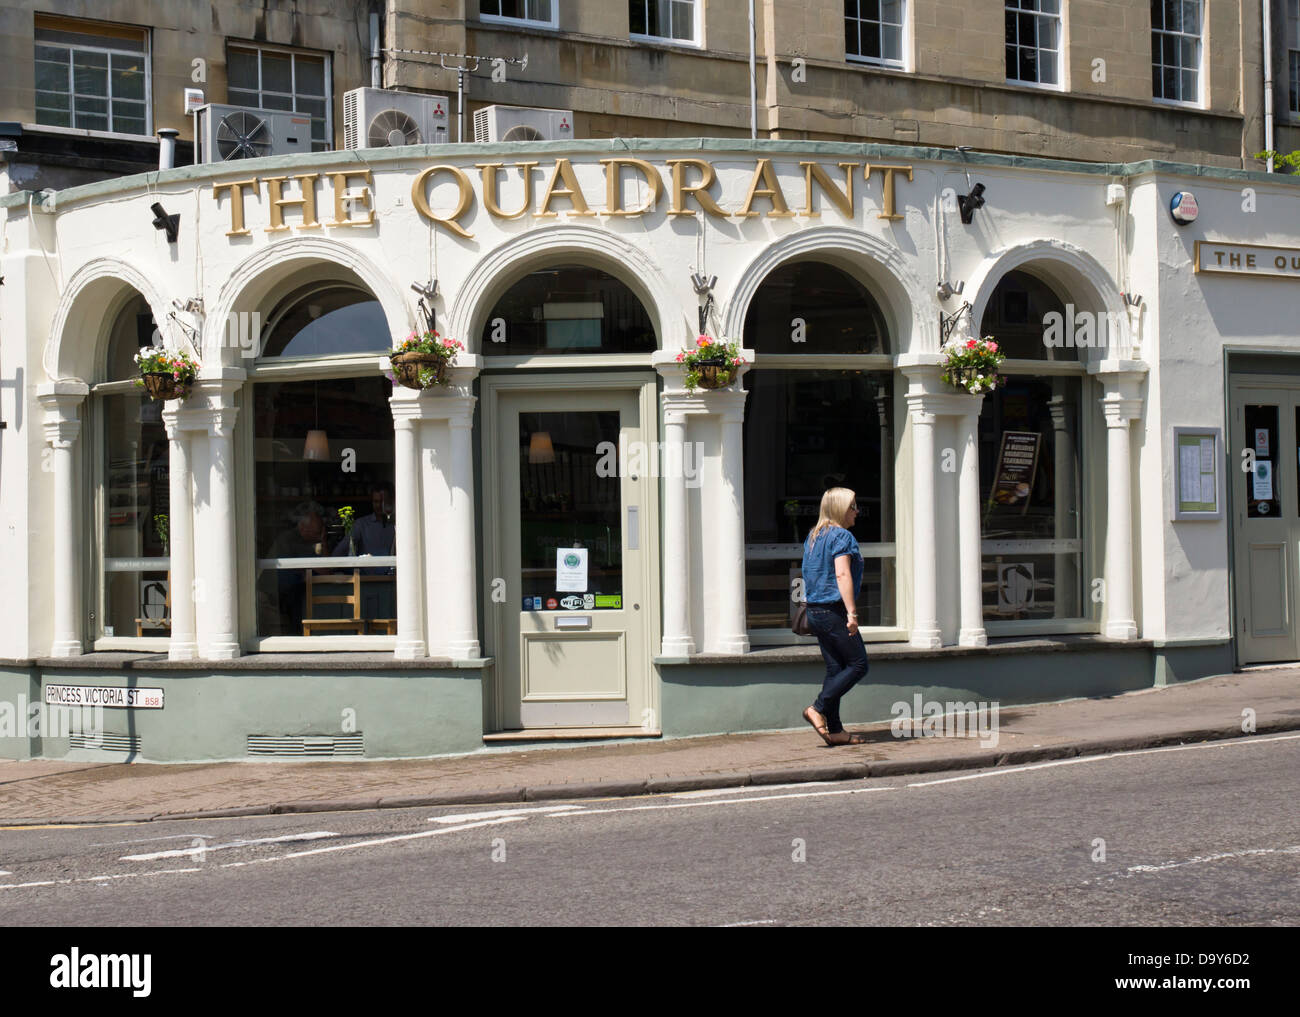 Le quadrant pub, une banlieue aisée de Clifton Bristol England UK Banque D'Images